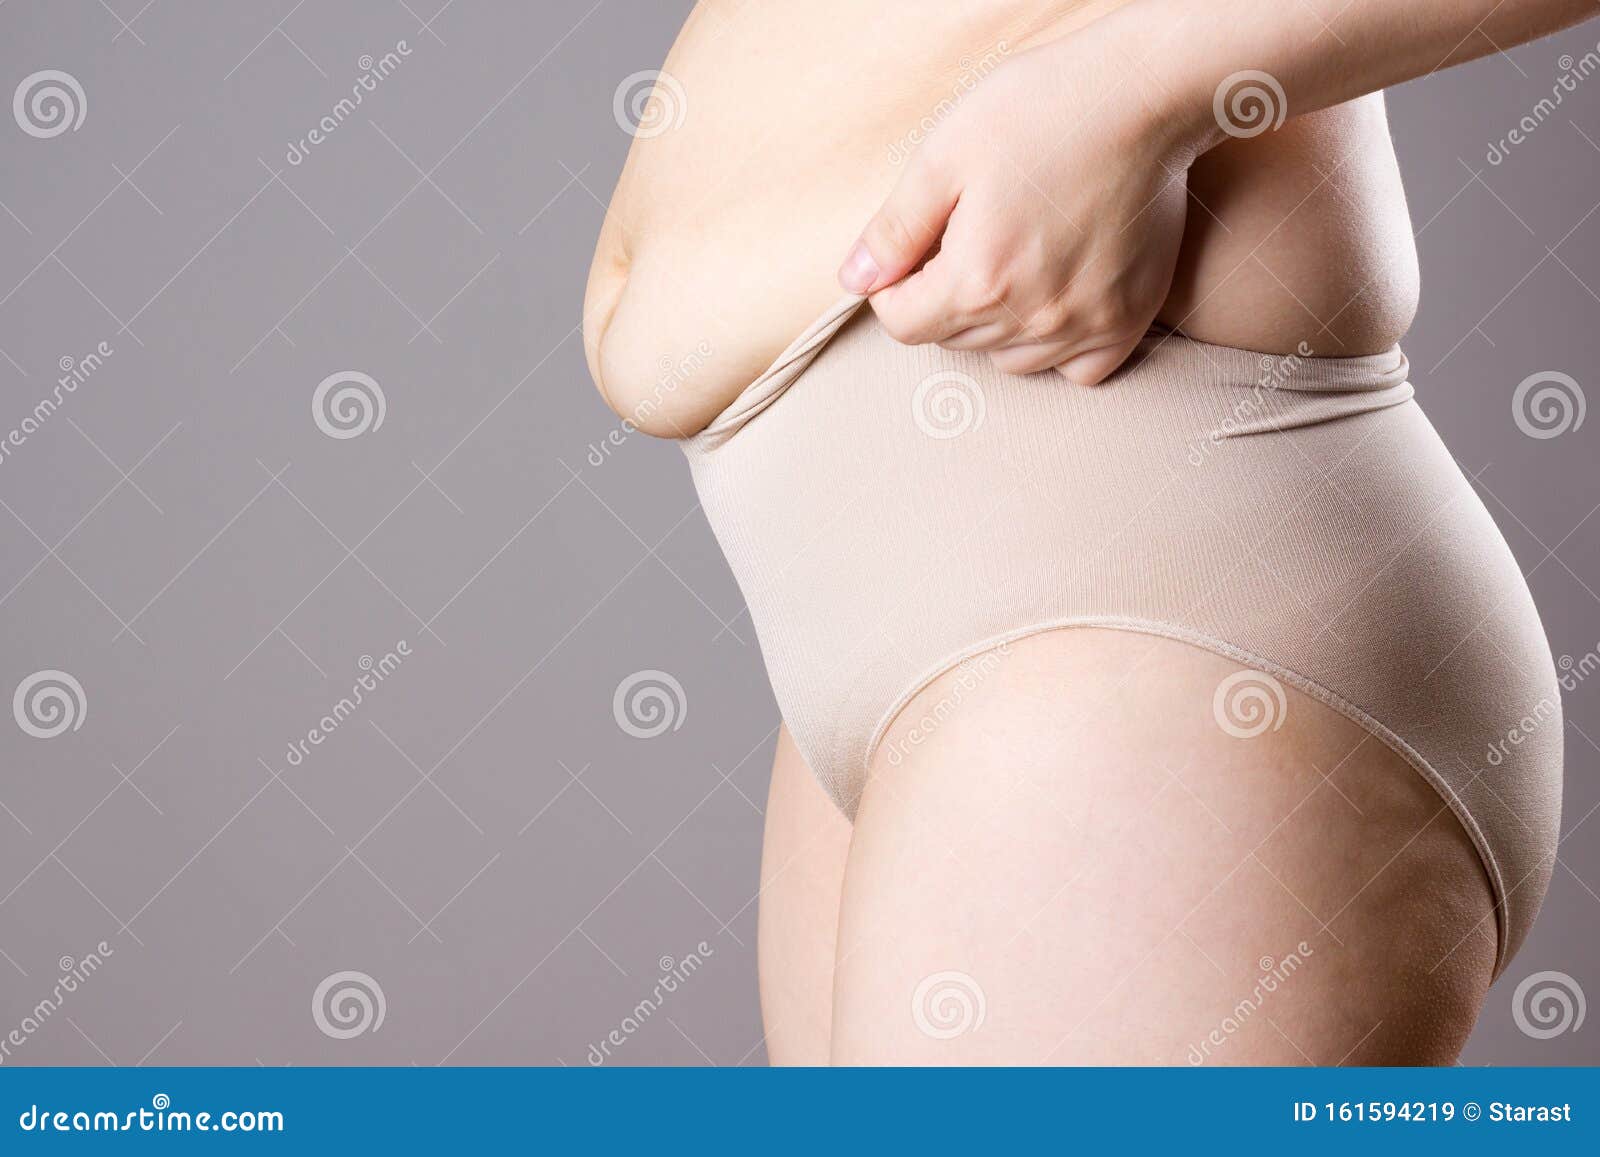 fat women in panties